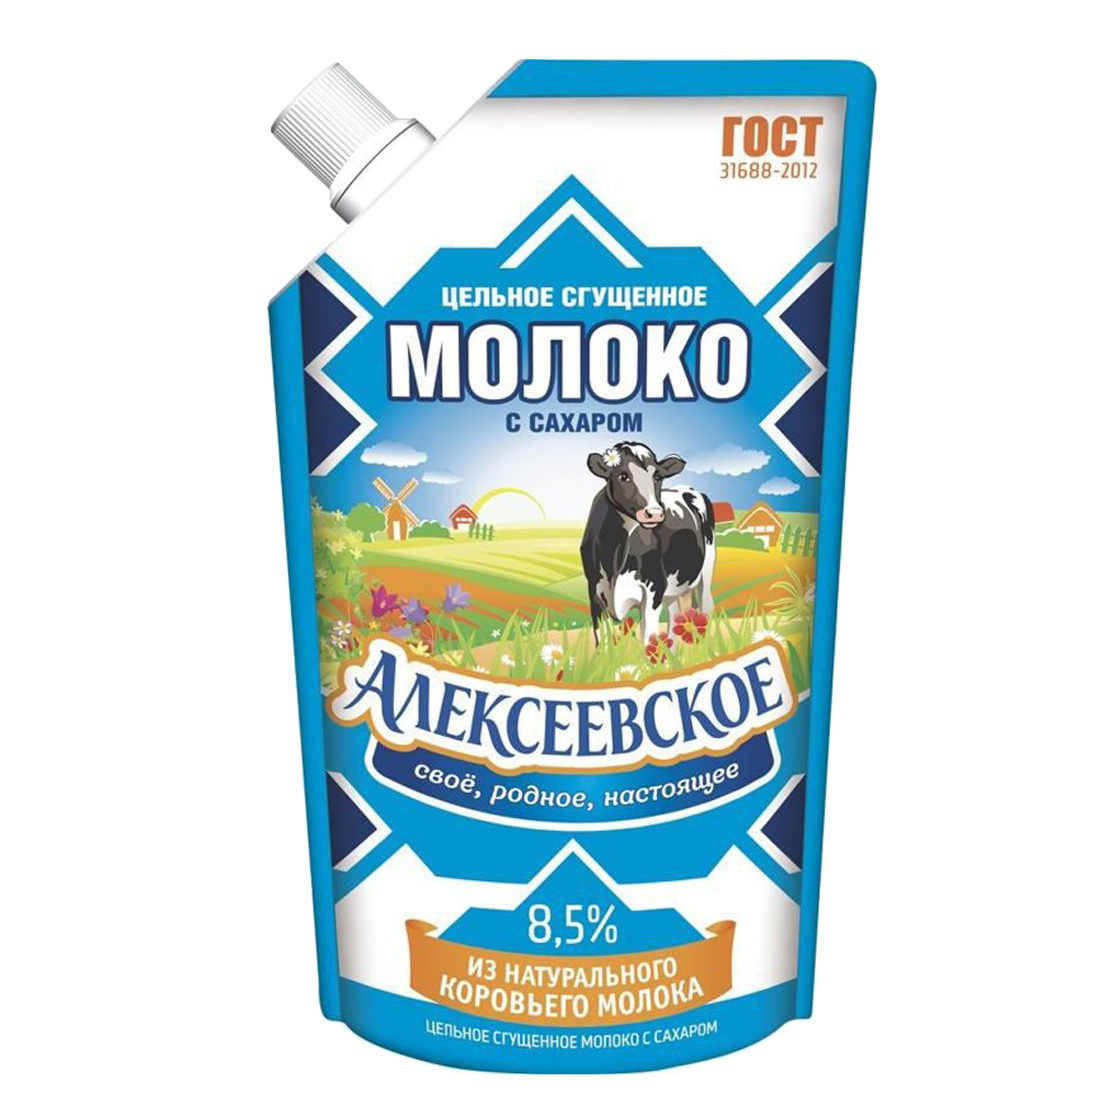 Молоко сгущенное Алексеевское 8,5% 270 г молоко сгущенное алексеевское бзмж 270 г